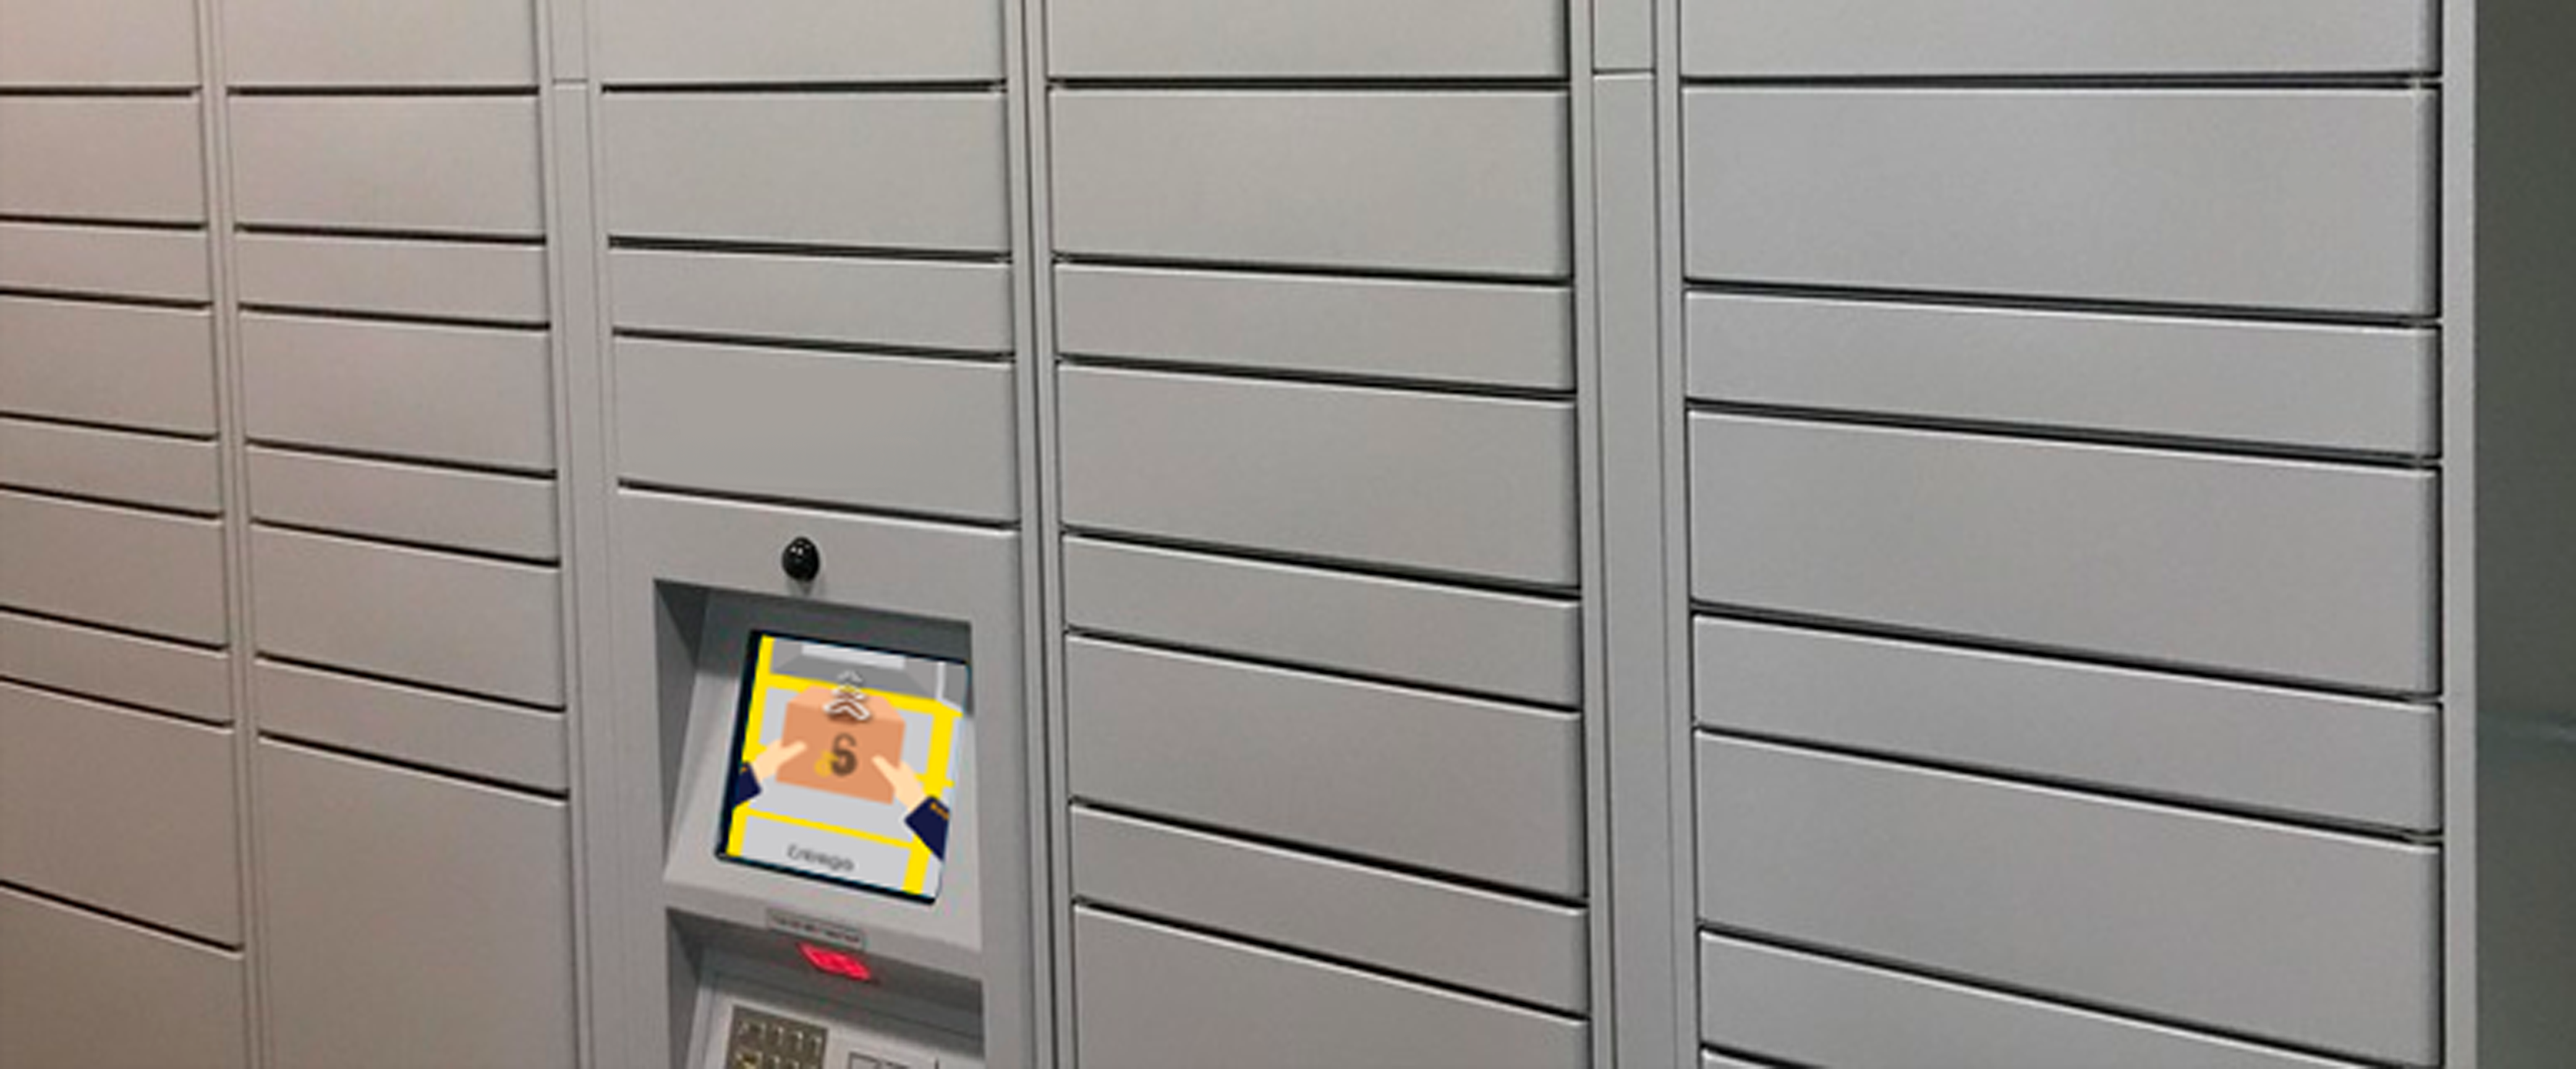 empresas desafios de smart lockers